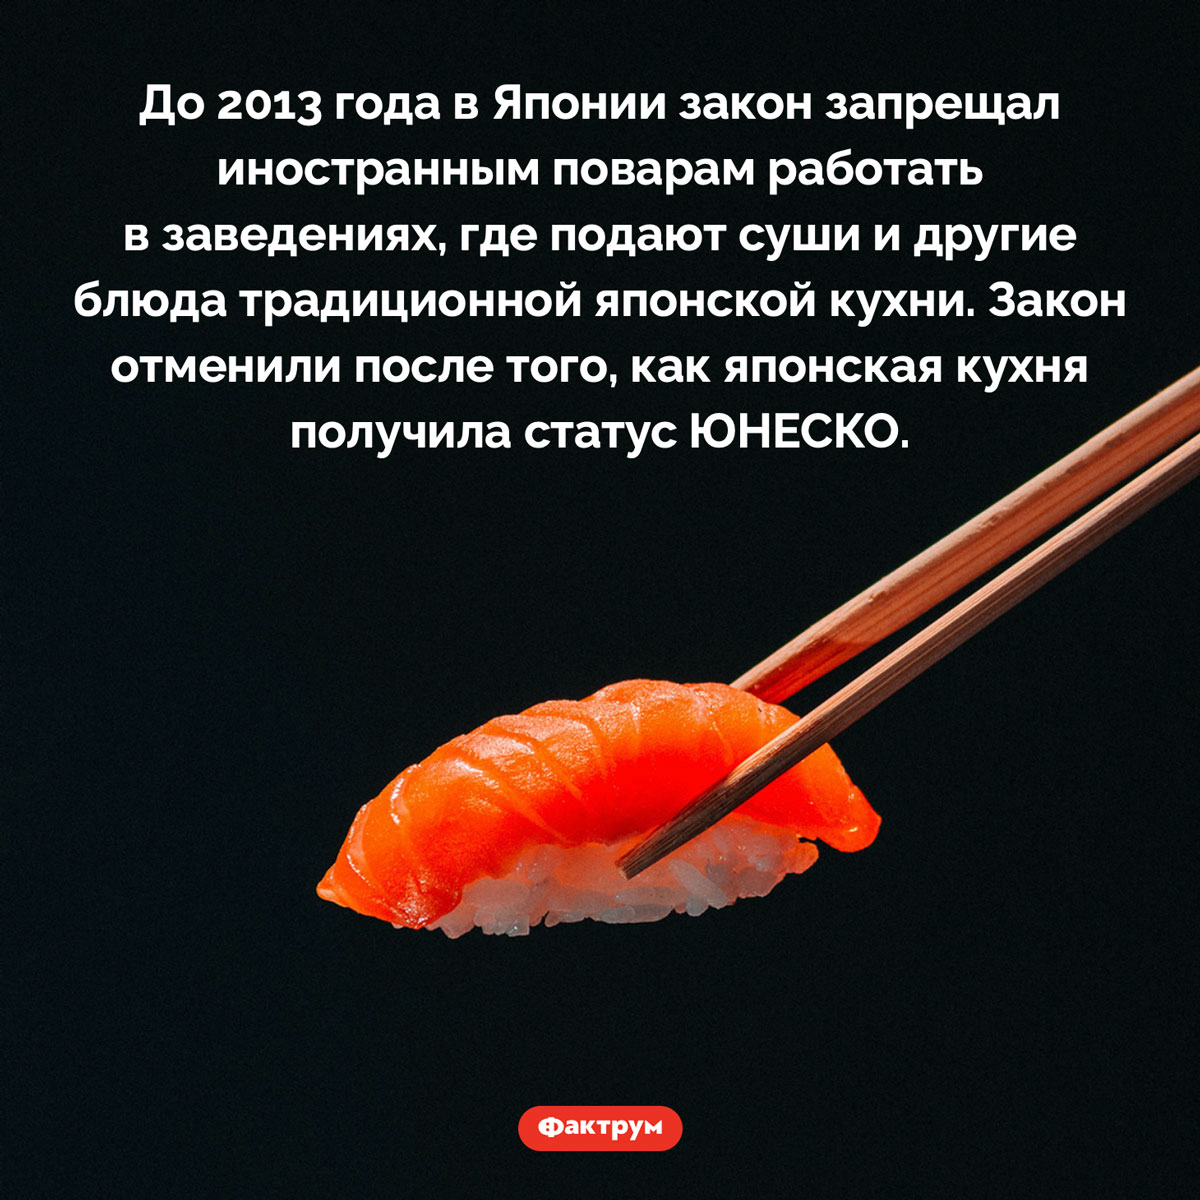 Запрет готовить суши. До 2013 года в Японии закон запрещал иностранным поварам работать в заведениях, где подают суши и другие блюда традиционной японской кухни. Закон отменили после того, как японская кухня получила статус ЮНЕСКО.